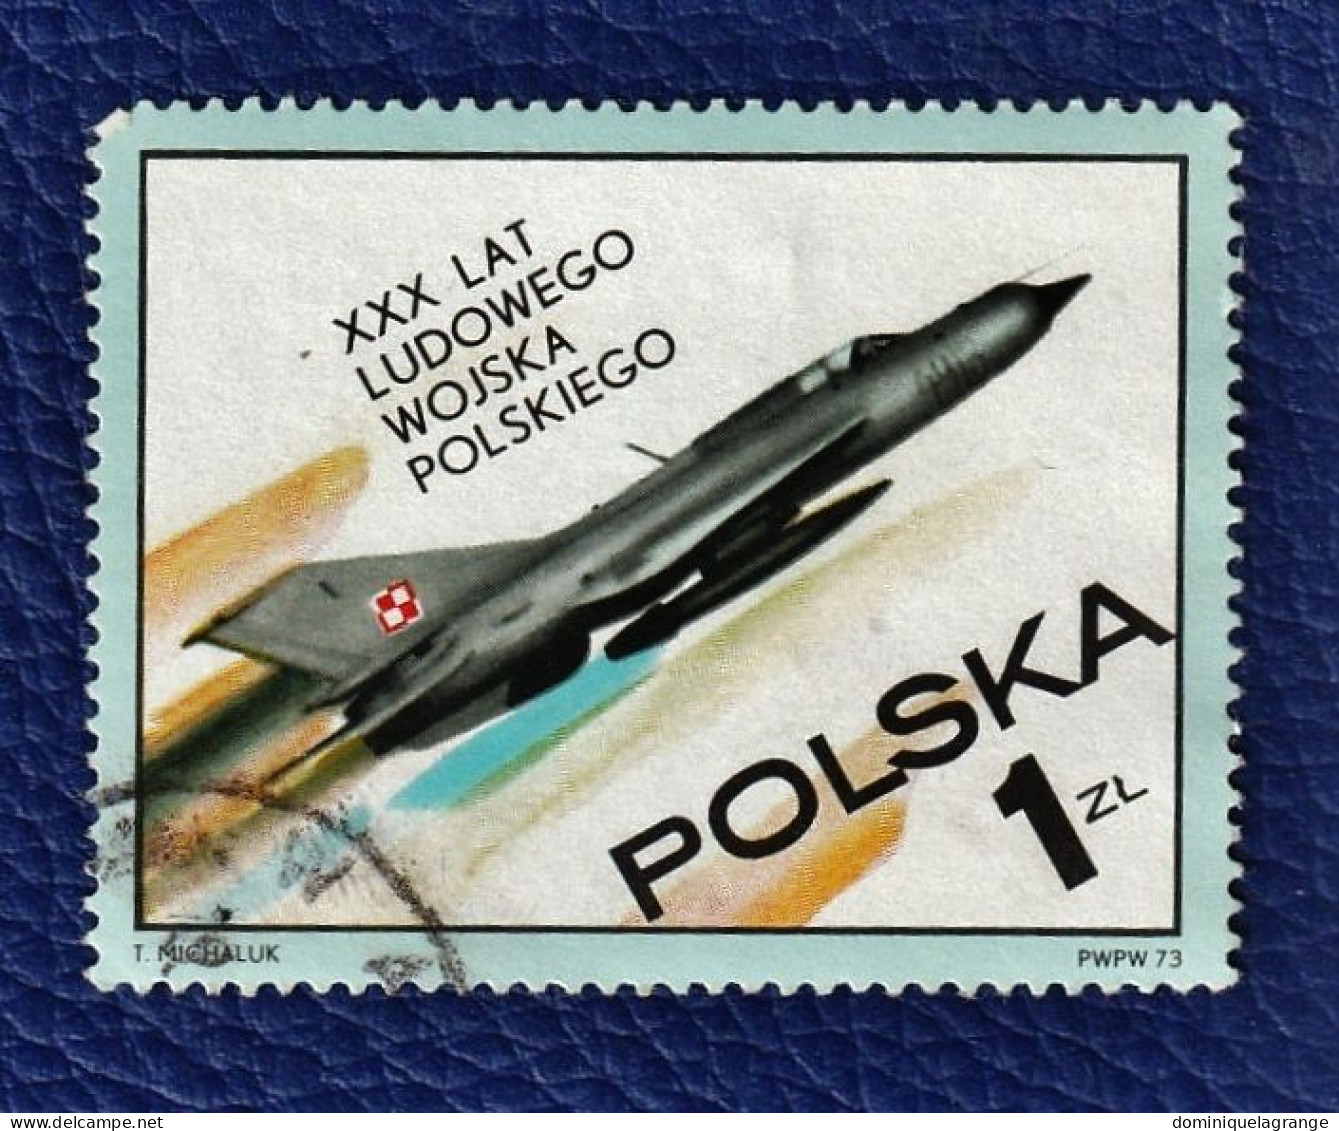 9 timbres de Pologne " de 1952 à 1976